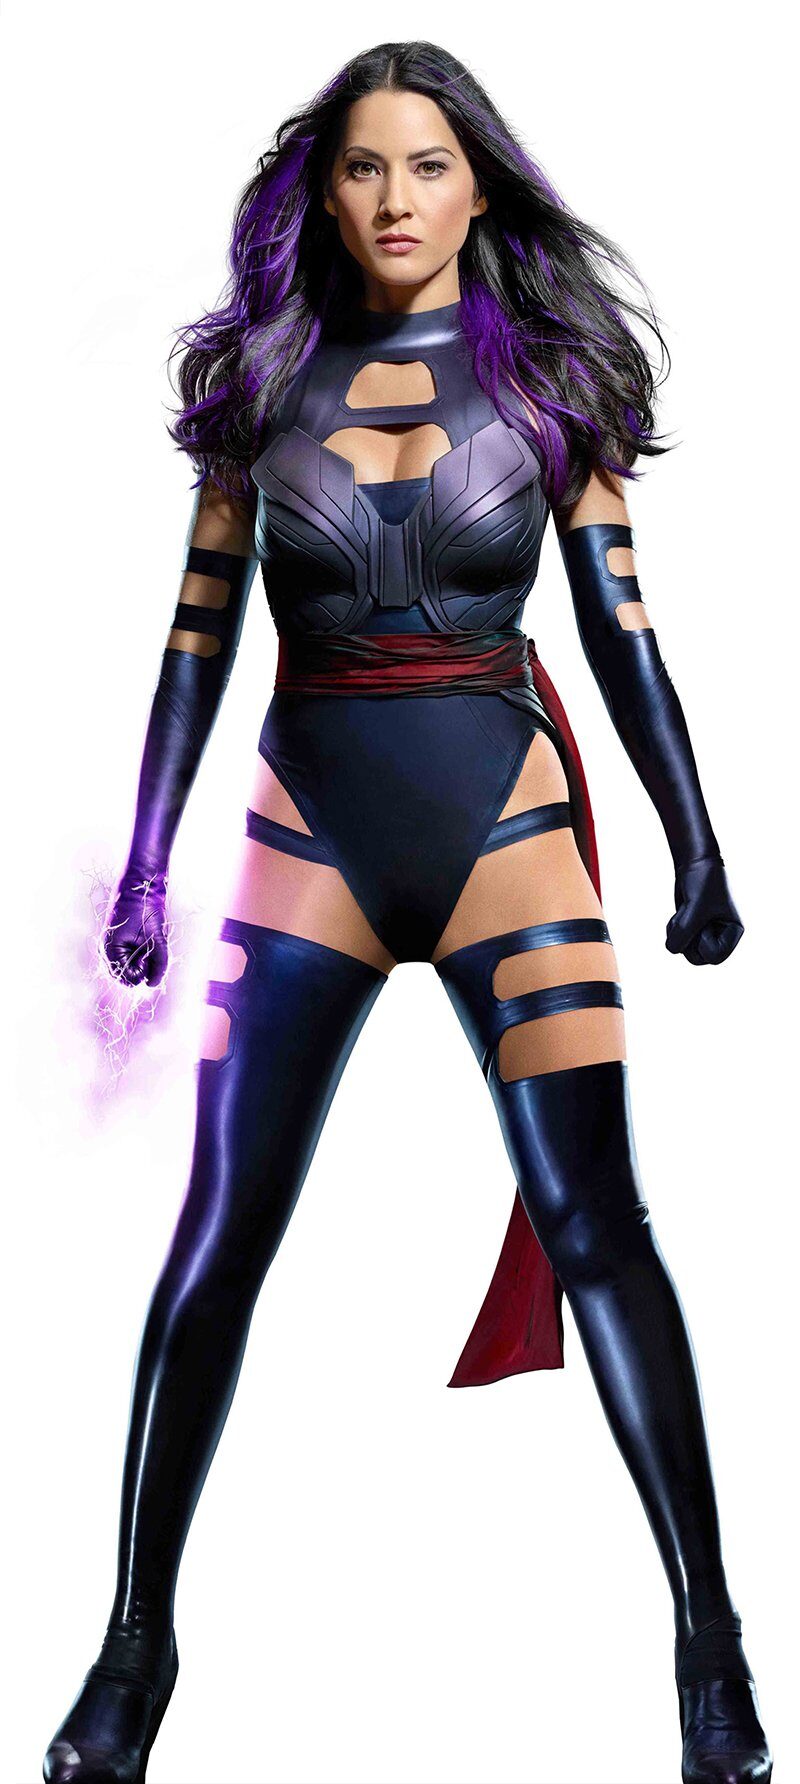 Olivia Munn fala como ADOOOORA ser a Psylocke nos cinemas!